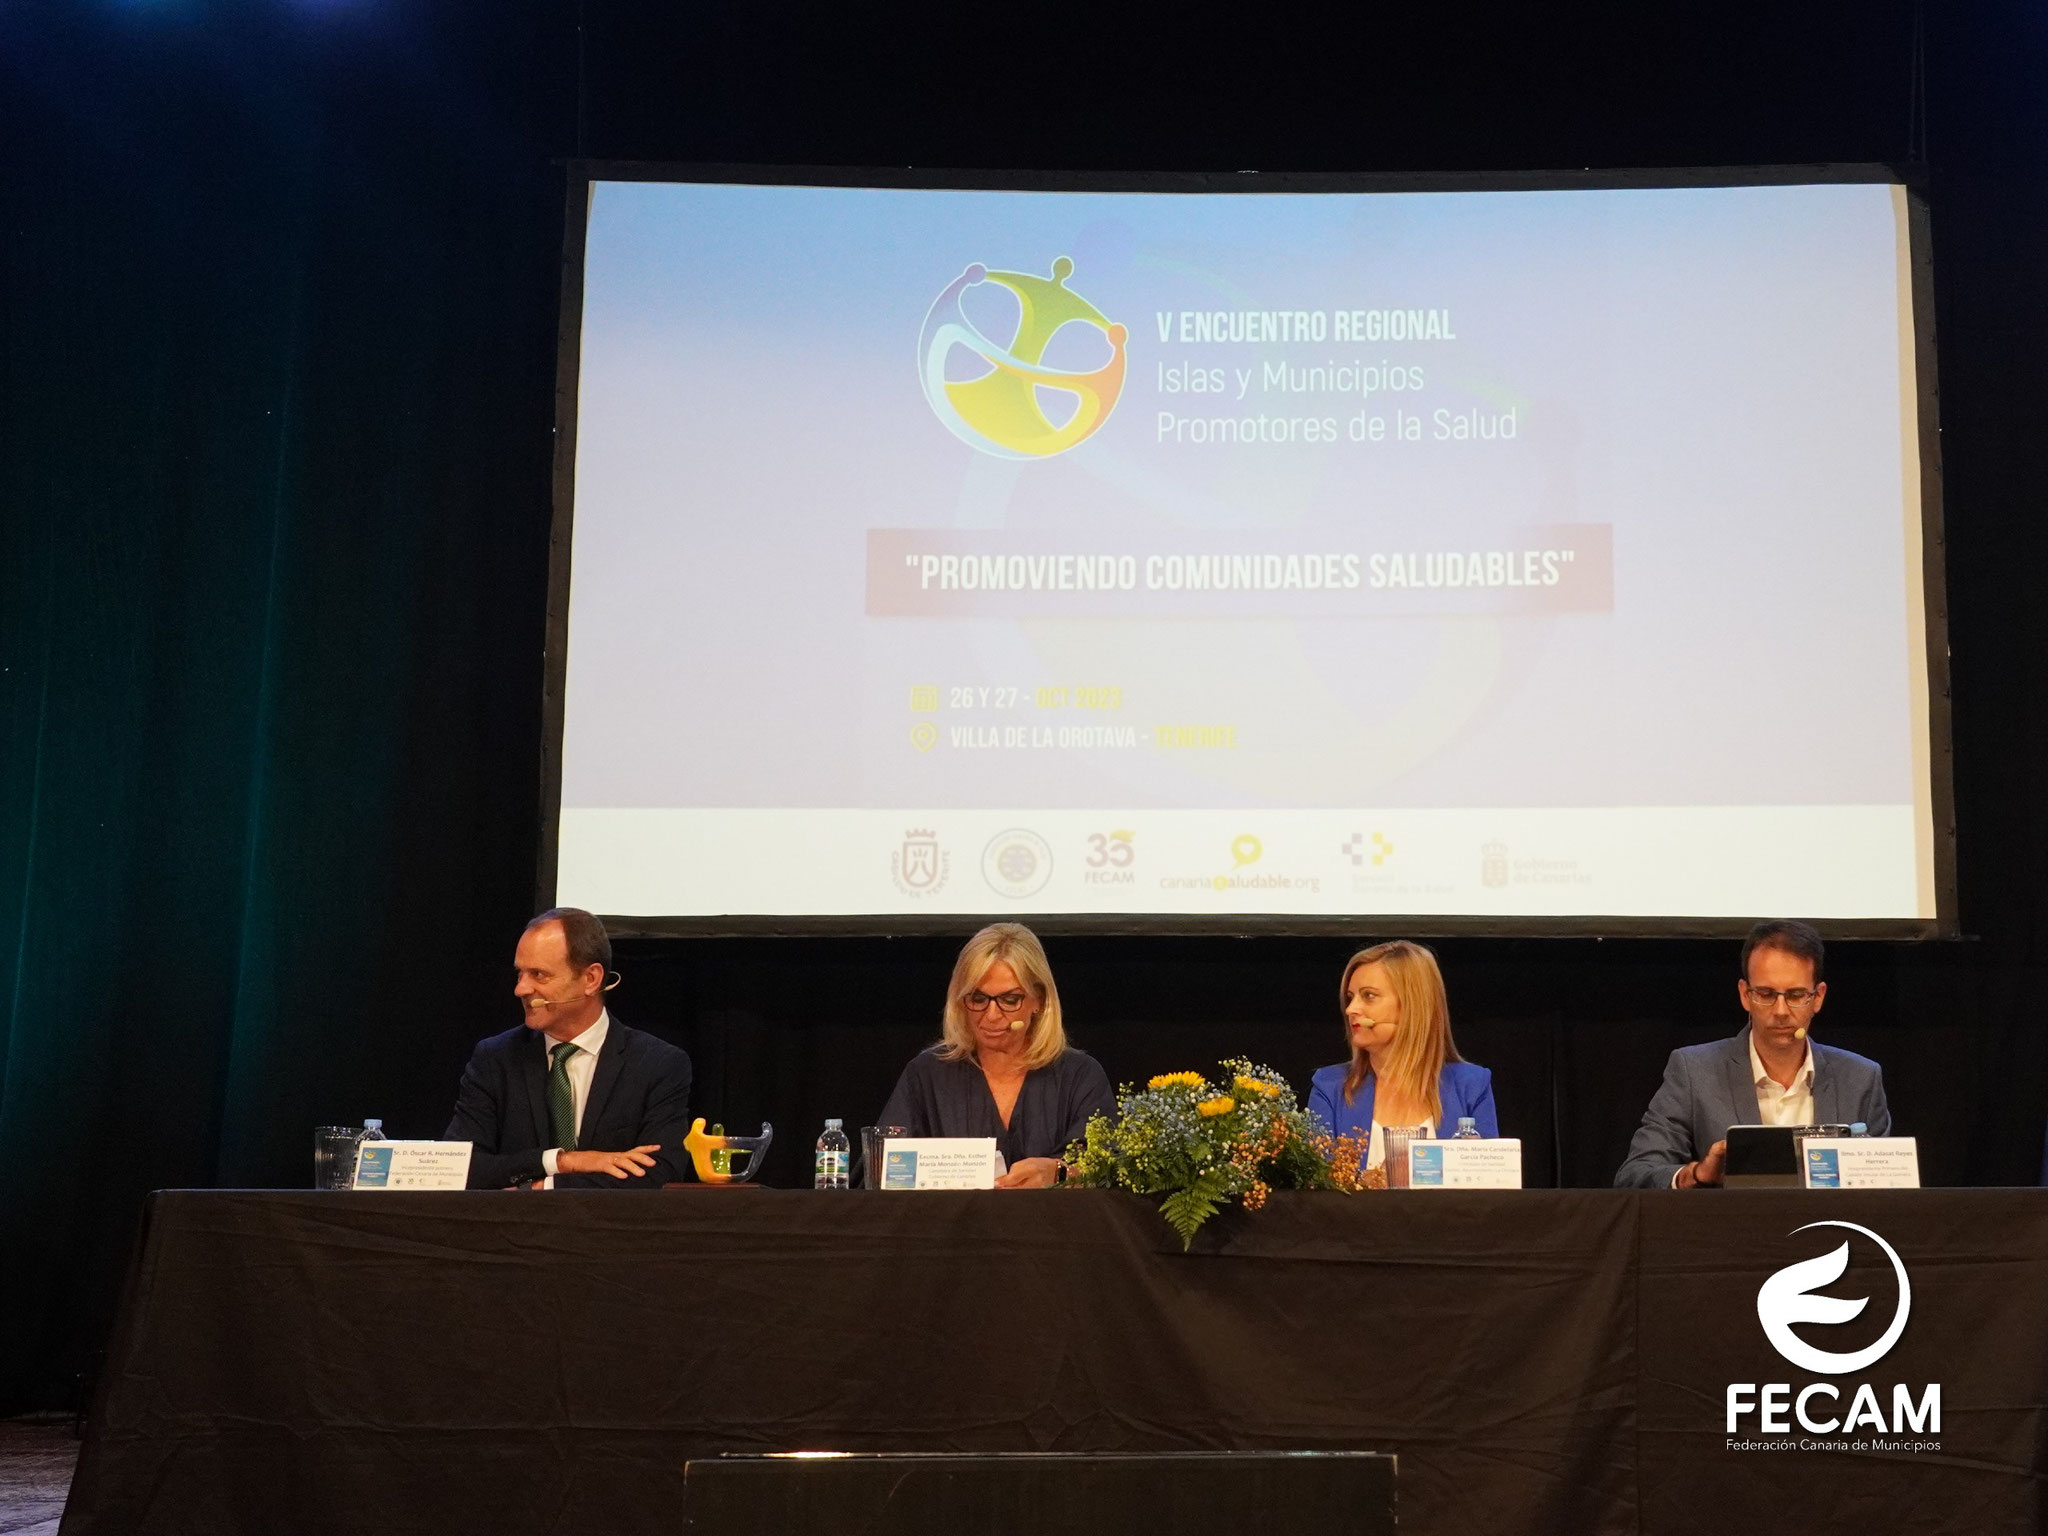 Acto inaugural - V Encuentro Regional de la Estrategia Canaria “Islas y municipios promotores de la Salud”